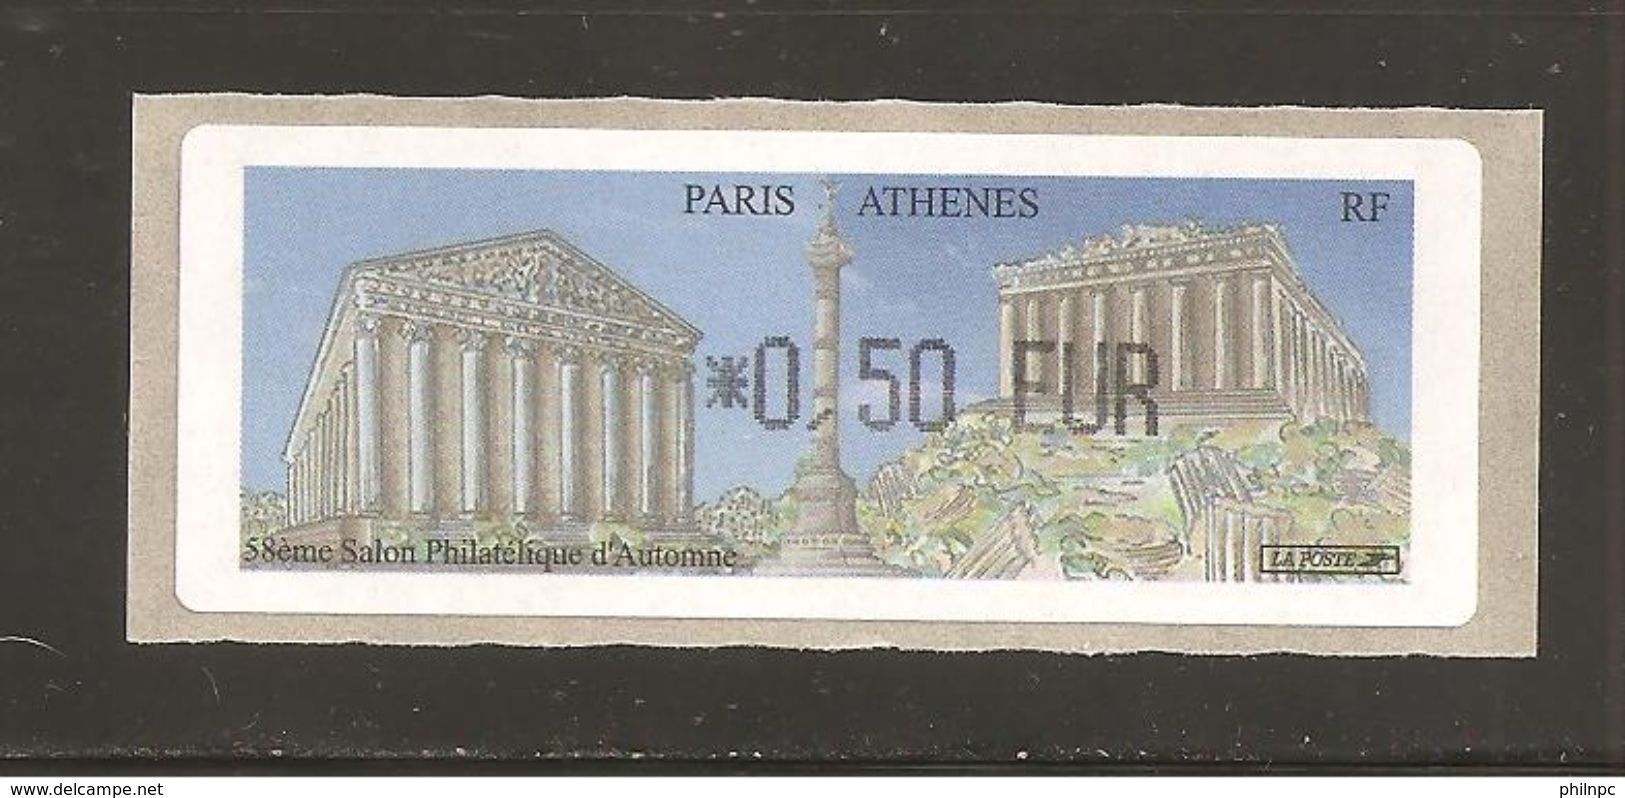 France, Distributeur, 596, Athènes, Paris, 2004, Type AC, Neuf **, LISA 1 - 1999-2009 Vignettes Illustrées